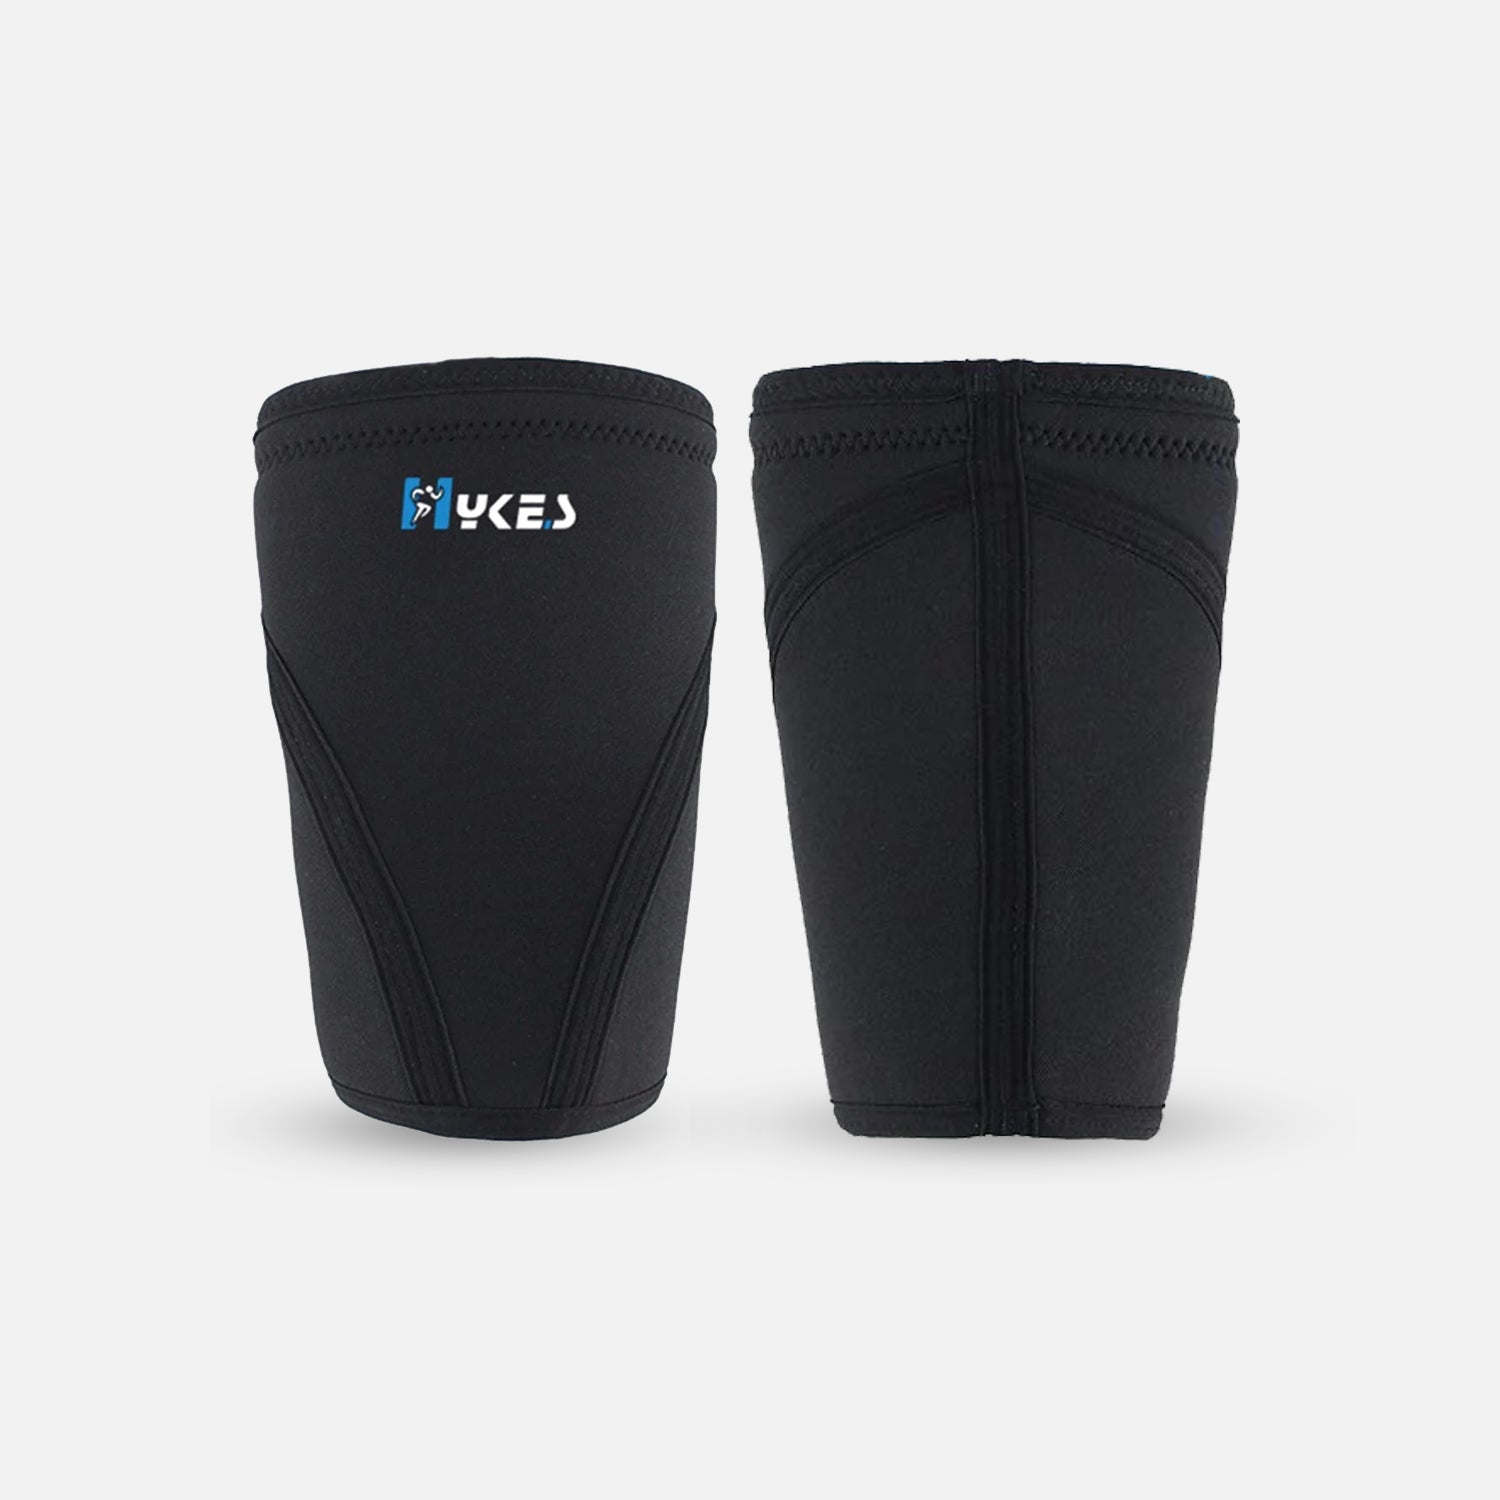 7mm Knee Support Neoprene Sleeves